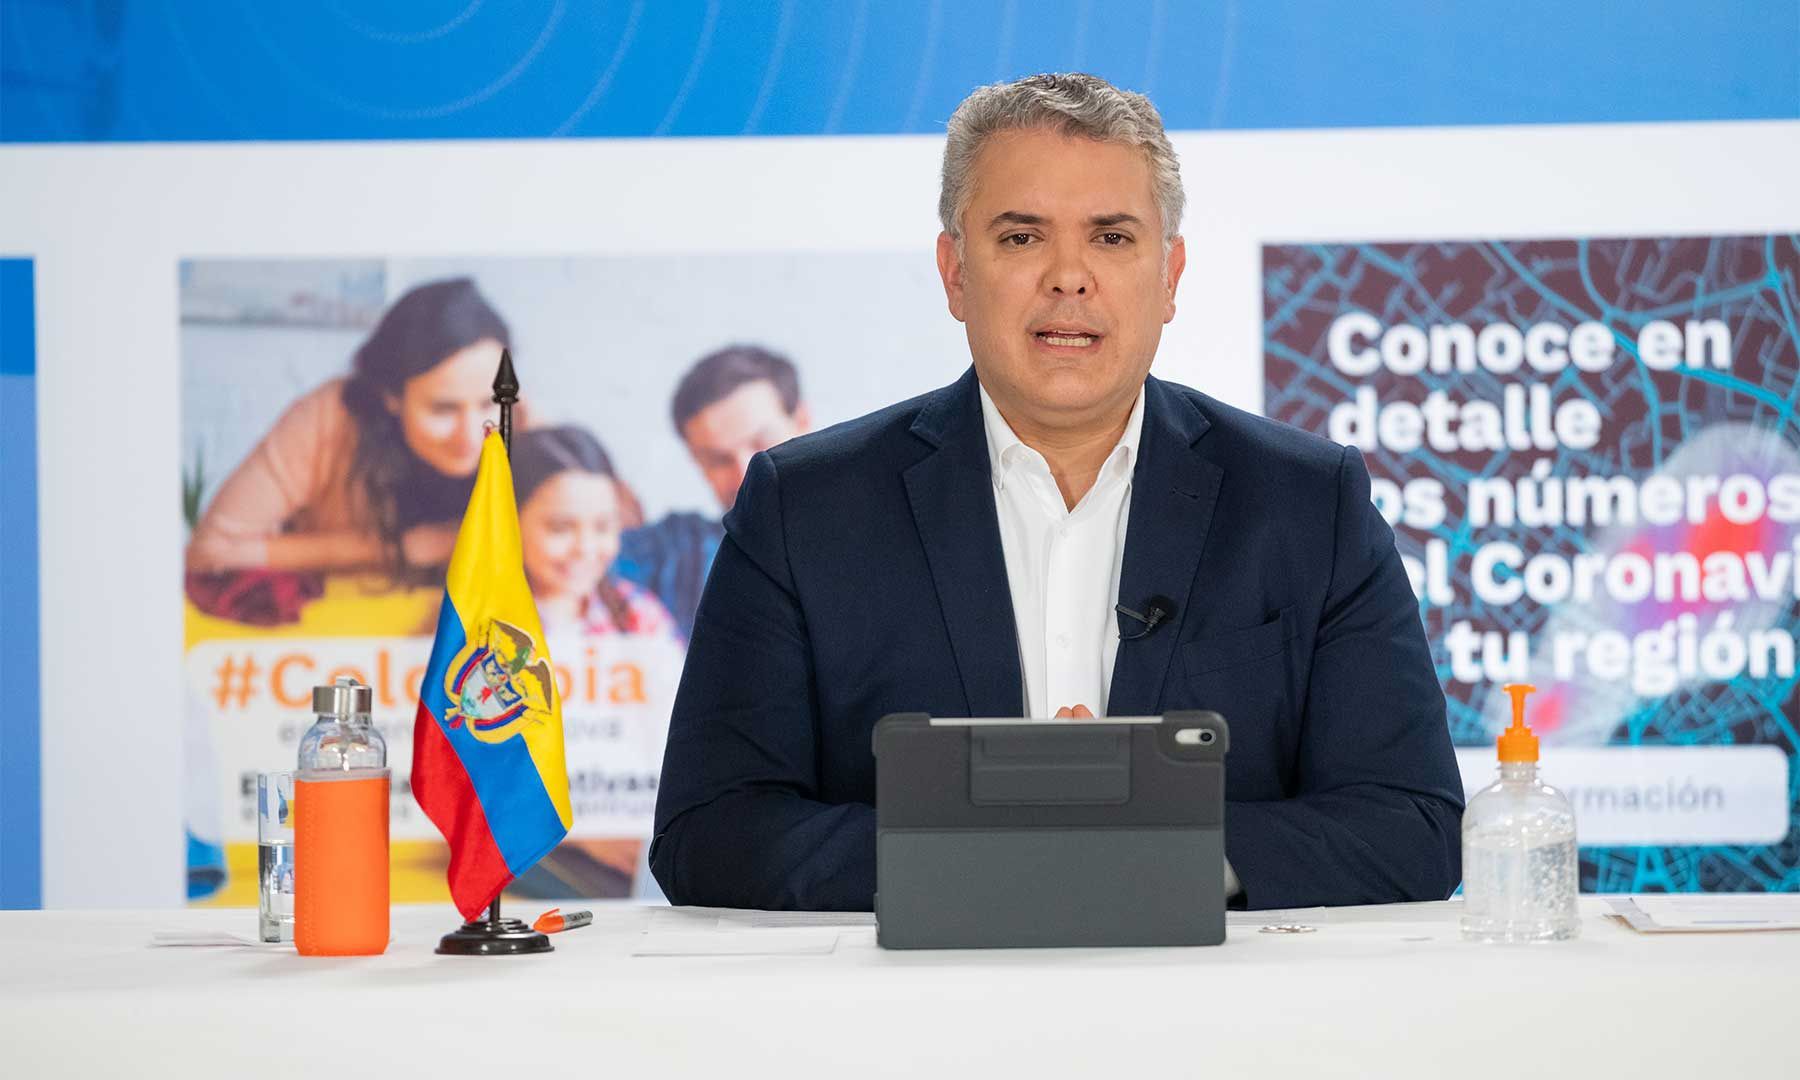 04/07/2020 El presidente de Colombia, Iván Duque.
POLITICA ESPAÑA EUROPA MADRID INTERNACIONAL
CÉSAR CARRIÓN / PRESIDENCIA DE COLOMBIA
